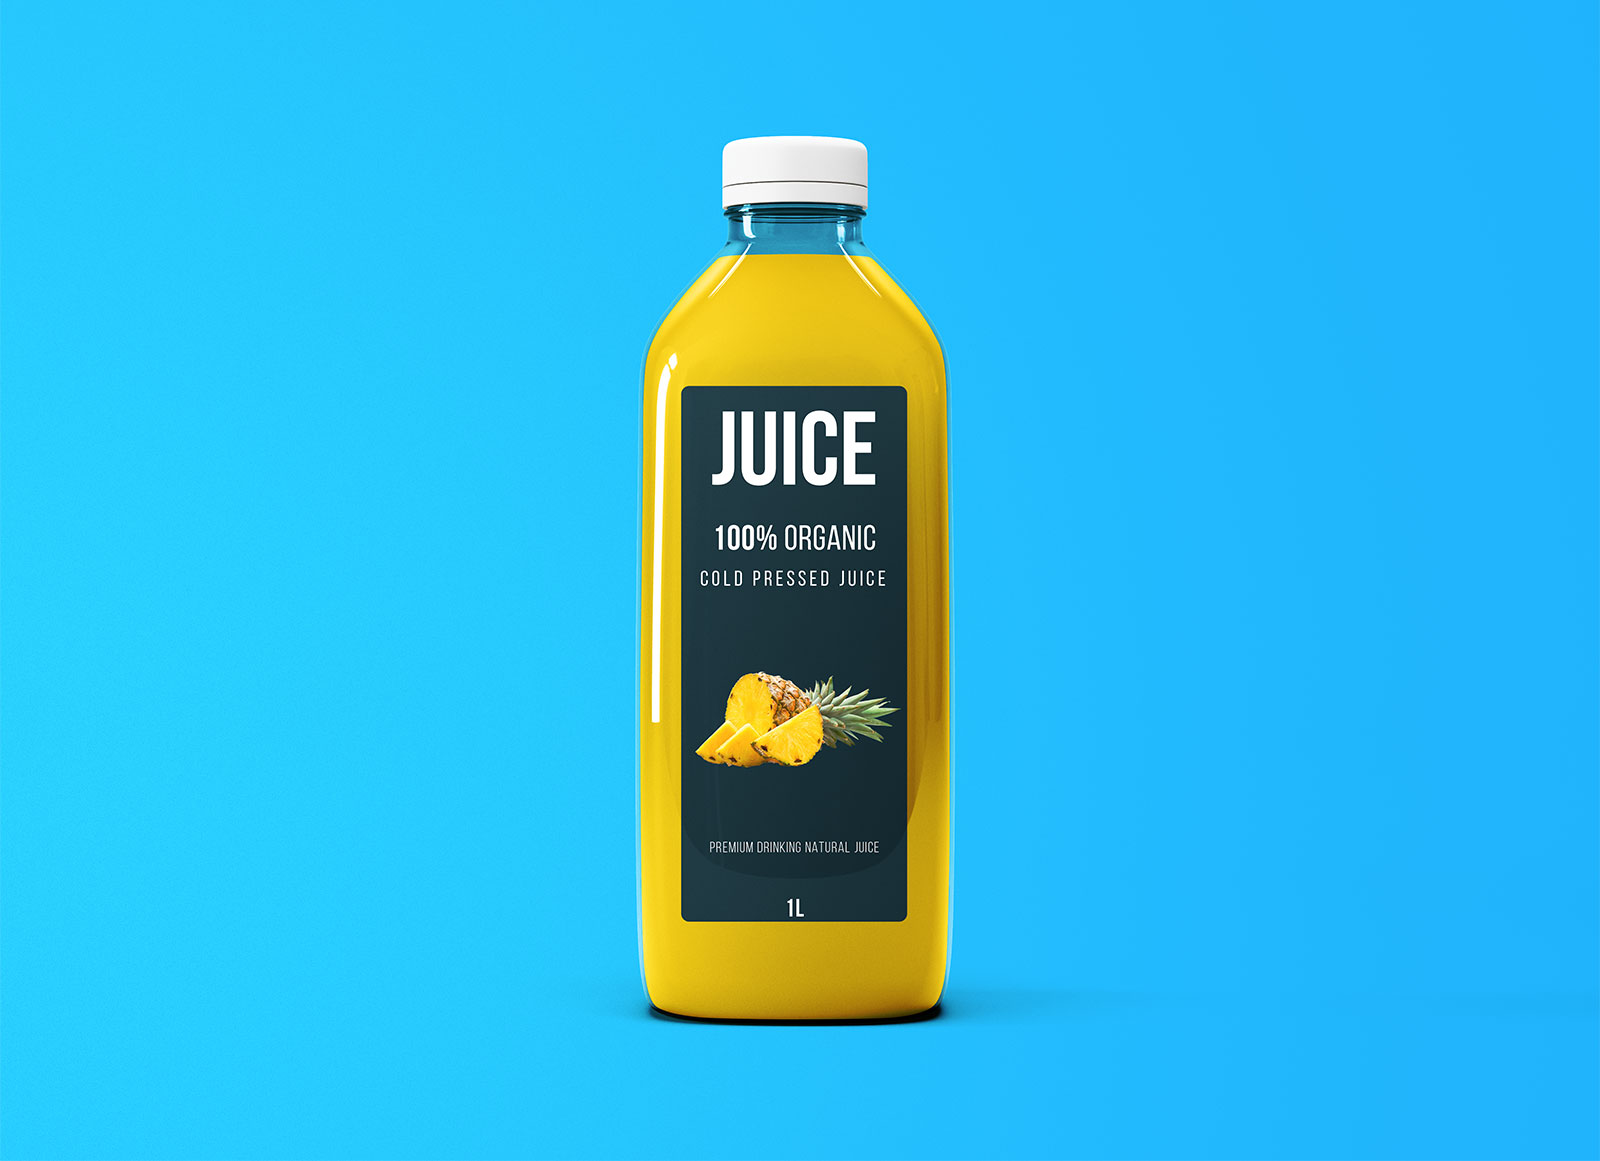 Download Free Large Size Juice Bottle Mockup PSD | Free Mockups ...